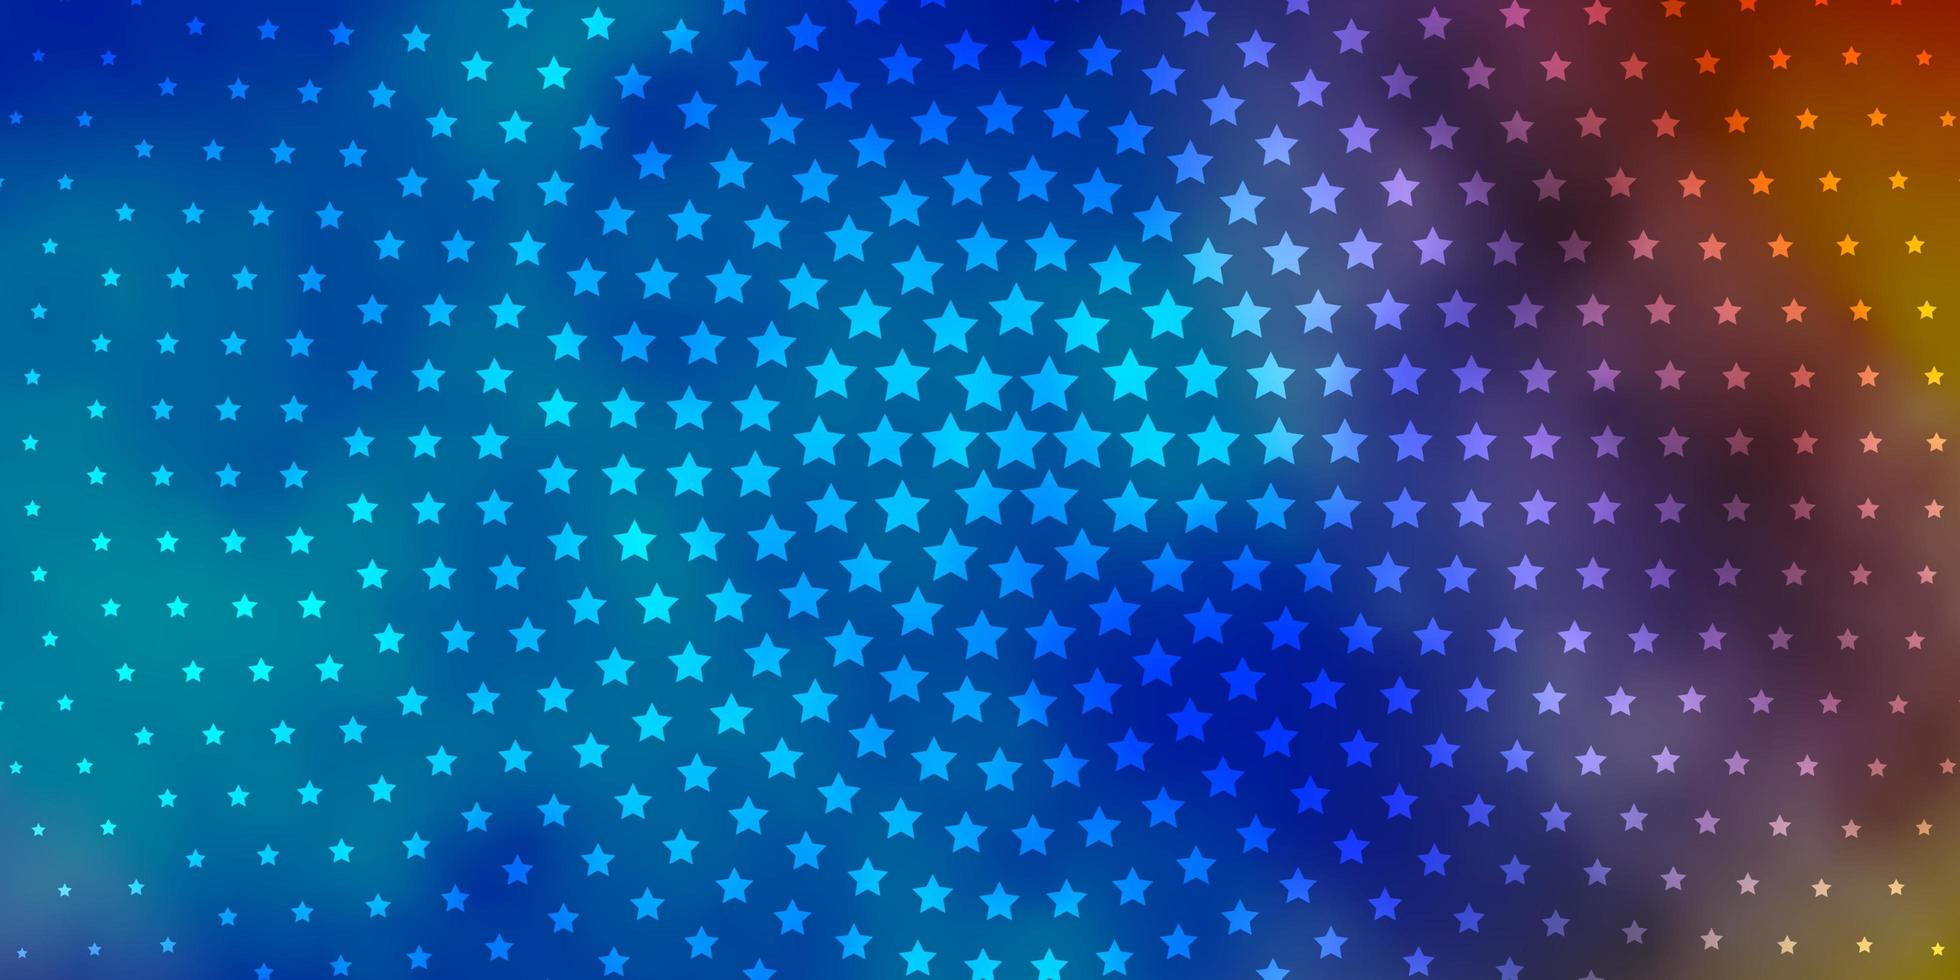 layout de vetor de azul claro e amarelo com estrelas brilhantes. ilustração decorativa com estrelas no modelo abstrato. padrão para embrulhar presentes.